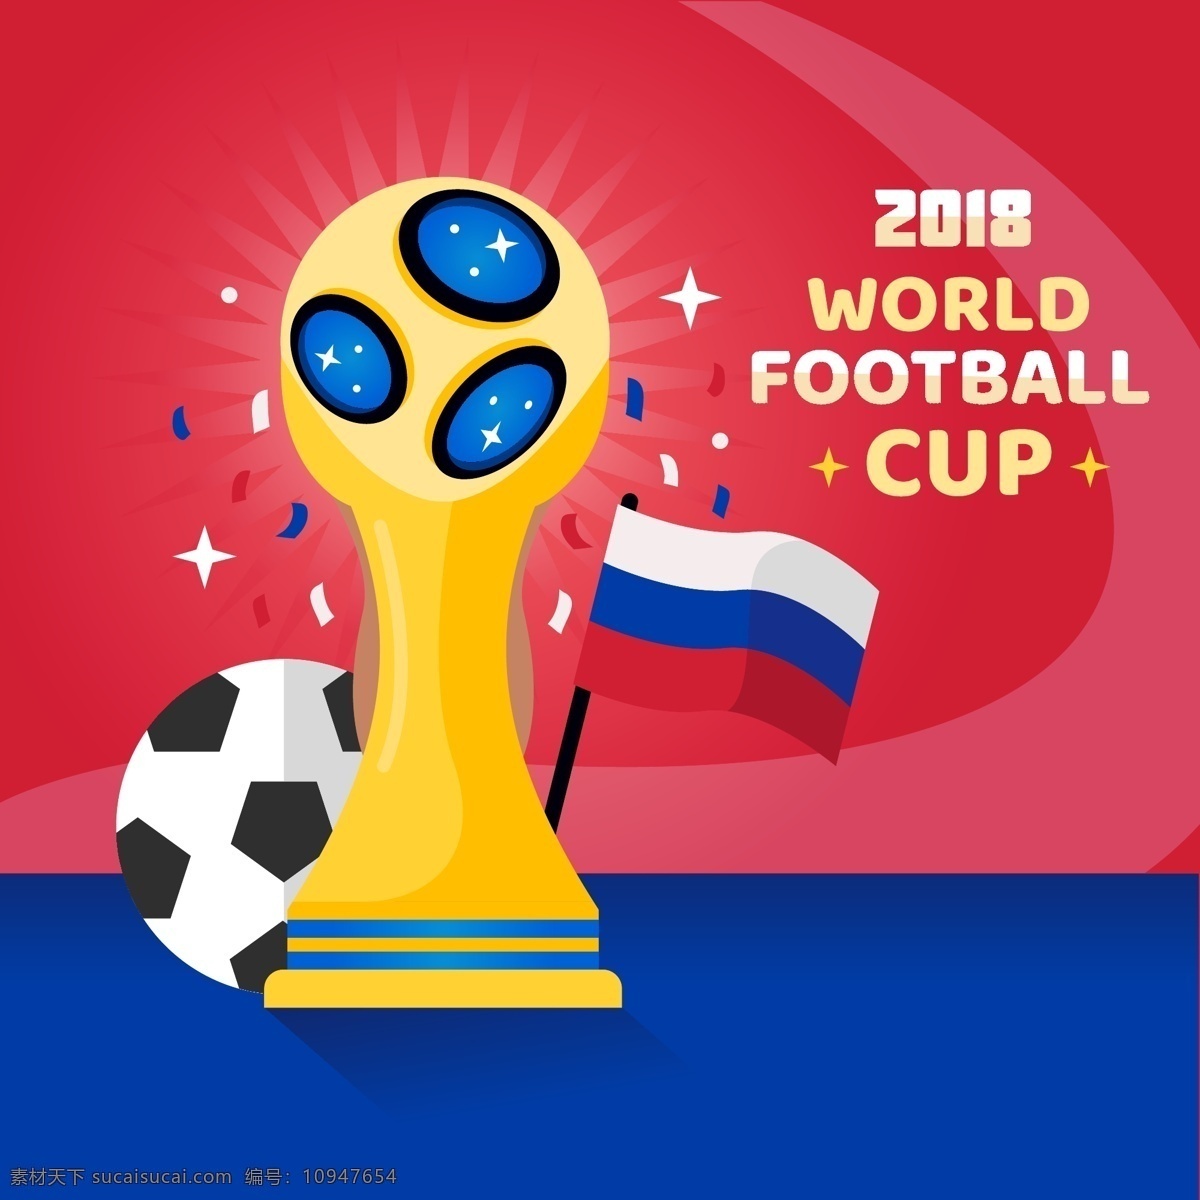 矢量 世界杯 足球赛 金色 奖杯 元素 矢量素材 足球 卡通 金色奖杯 俄罗斯 欧洲杯 比赛 体育 竞赛 2018